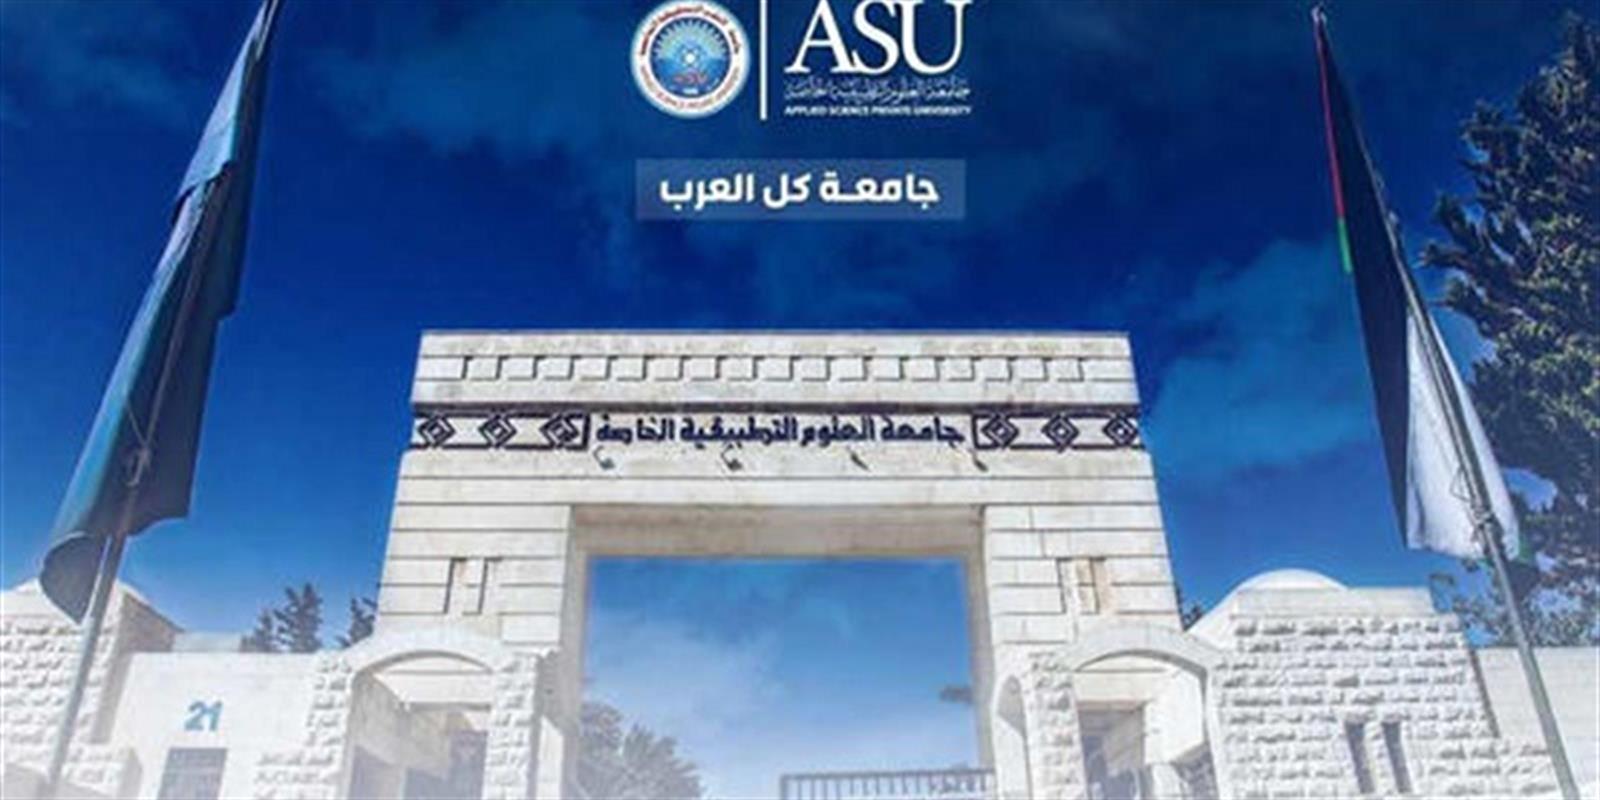 العلوم التطبيقية الخاصة تصنيفات واعتمادات عالمية وعربية تُجوّد تخصصاتها"الأولى محلياً في تصنيف تايمز العالمي للجامعات العربية"* 